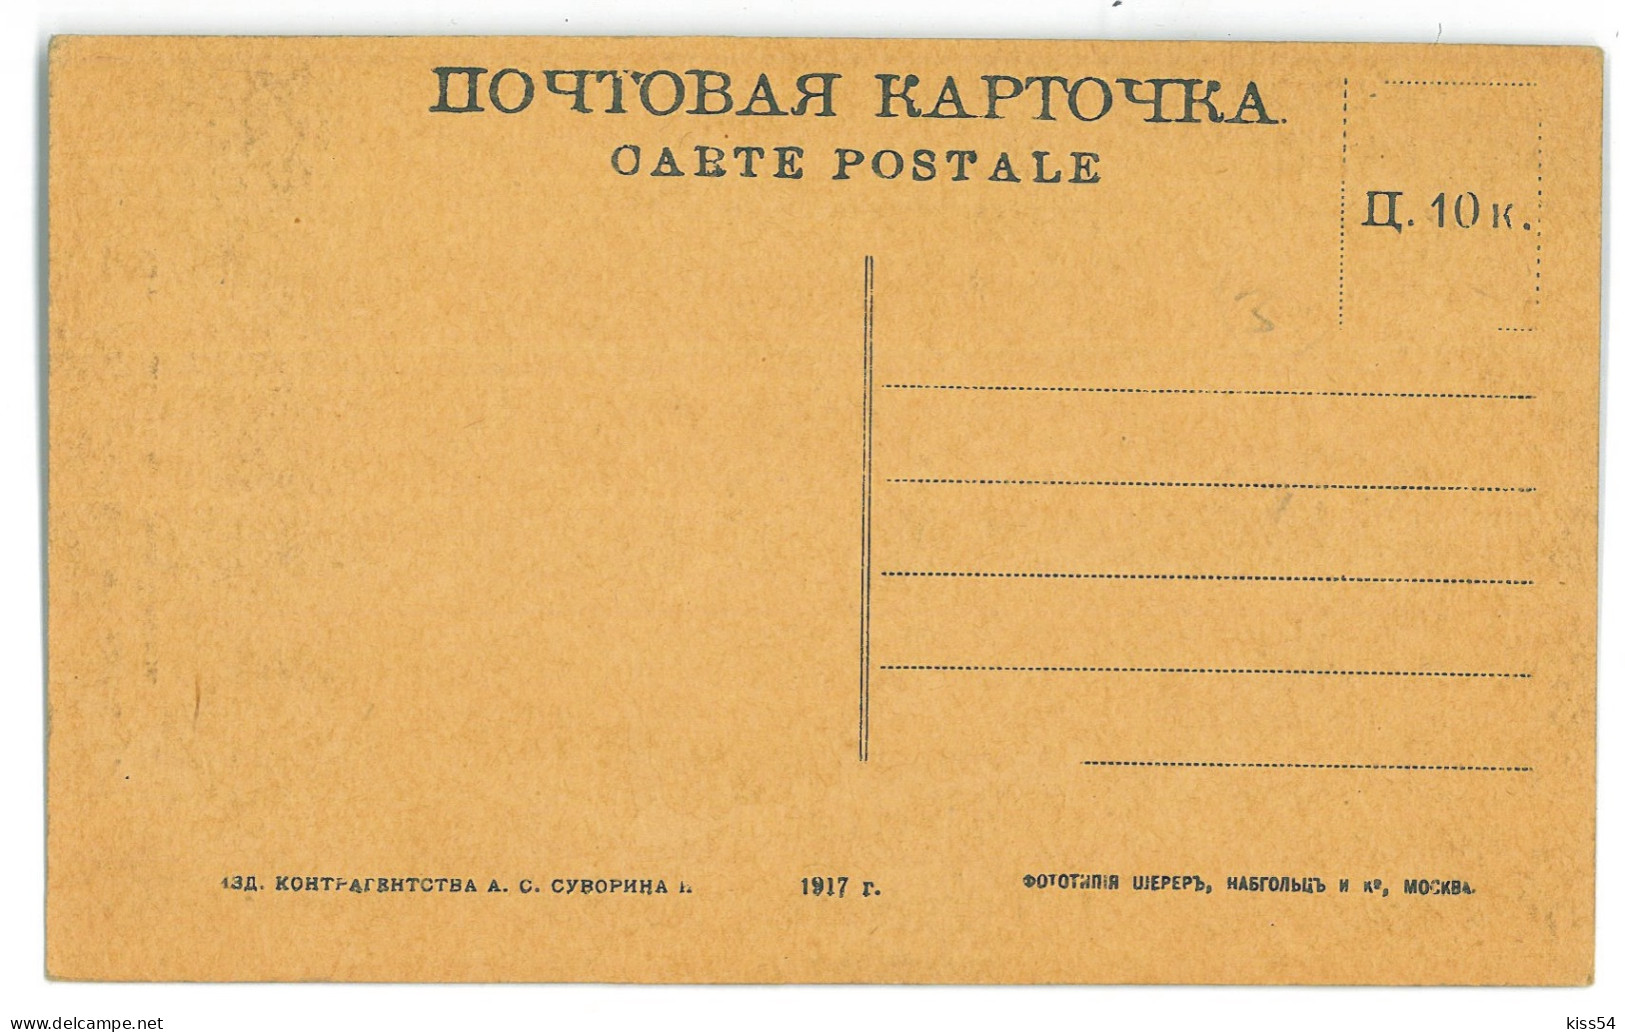 UK 75 - 24179 KIEV, Monument Of Prince Vladimir, Ukraine - Old Postcard - Unused - Ucrania